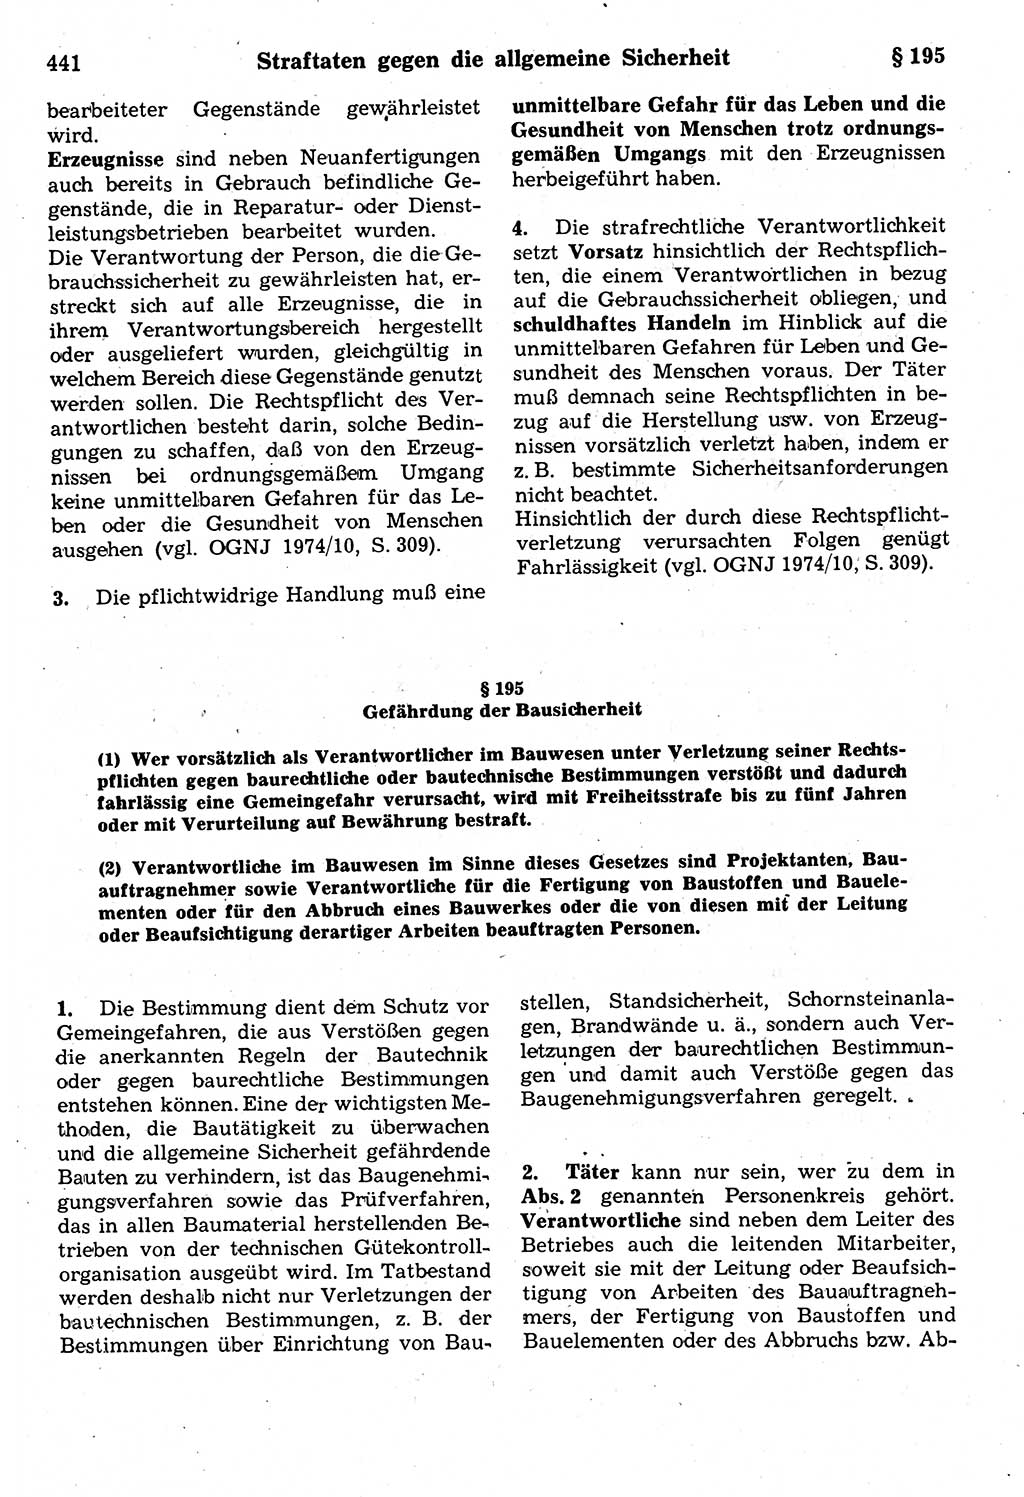 Strafrecht der Deutschen Demokratischen Republik (DDR), Kommentar zum Strafgesetzbuch (StGB) 1987, Seite 441 (Strafr. DDR Komm. StGB 1987, S. 441)